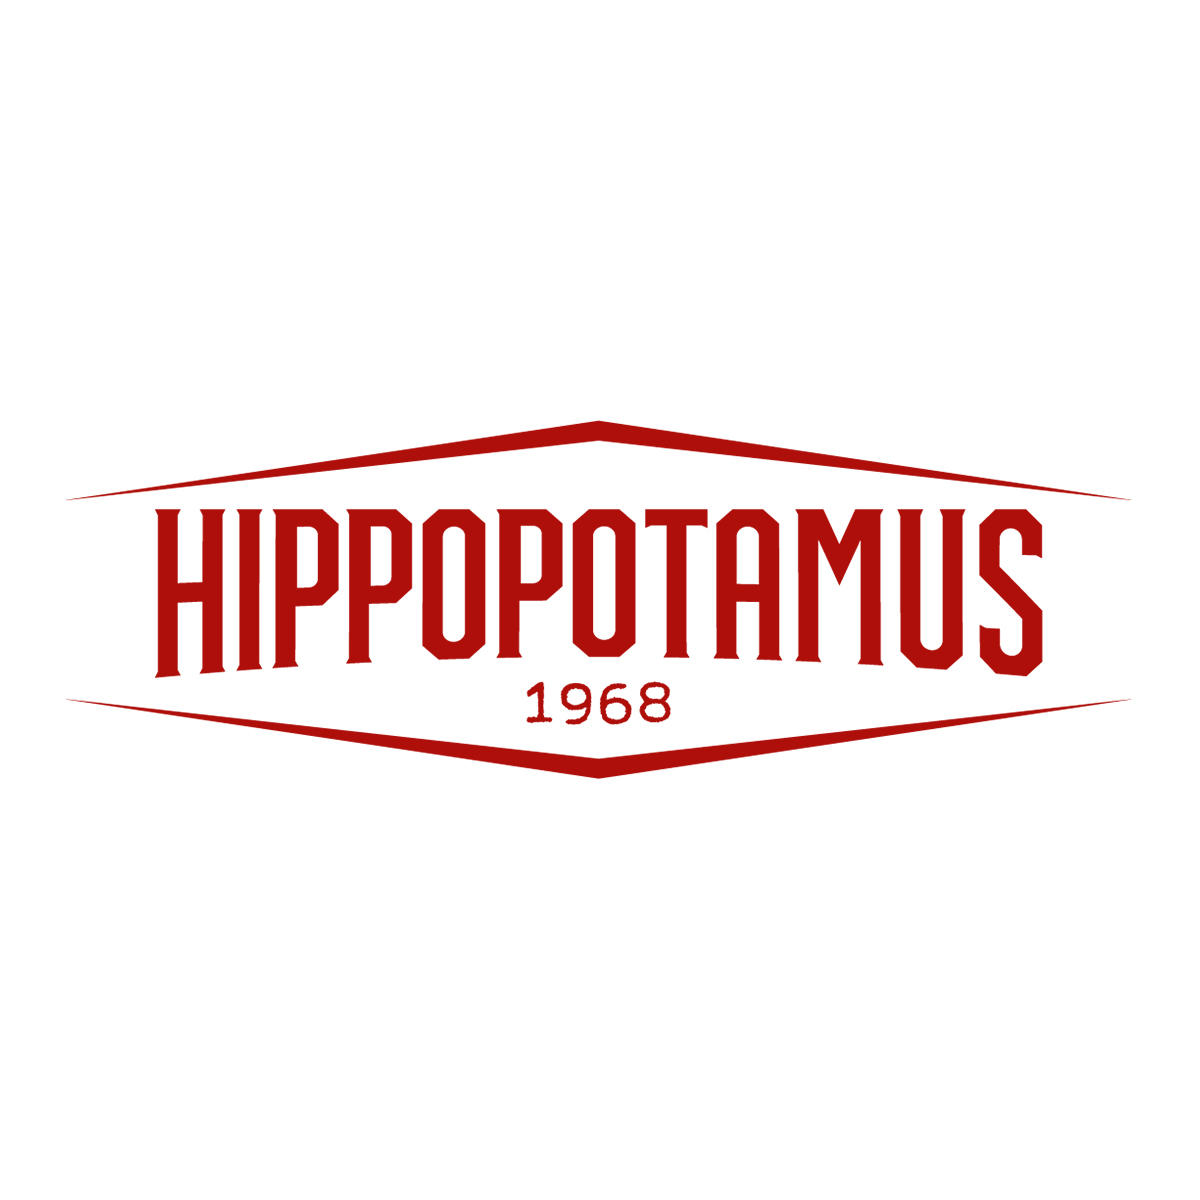 Hippopotamus Steakhouse Coudekerque-Branche 03 74 88 00 38